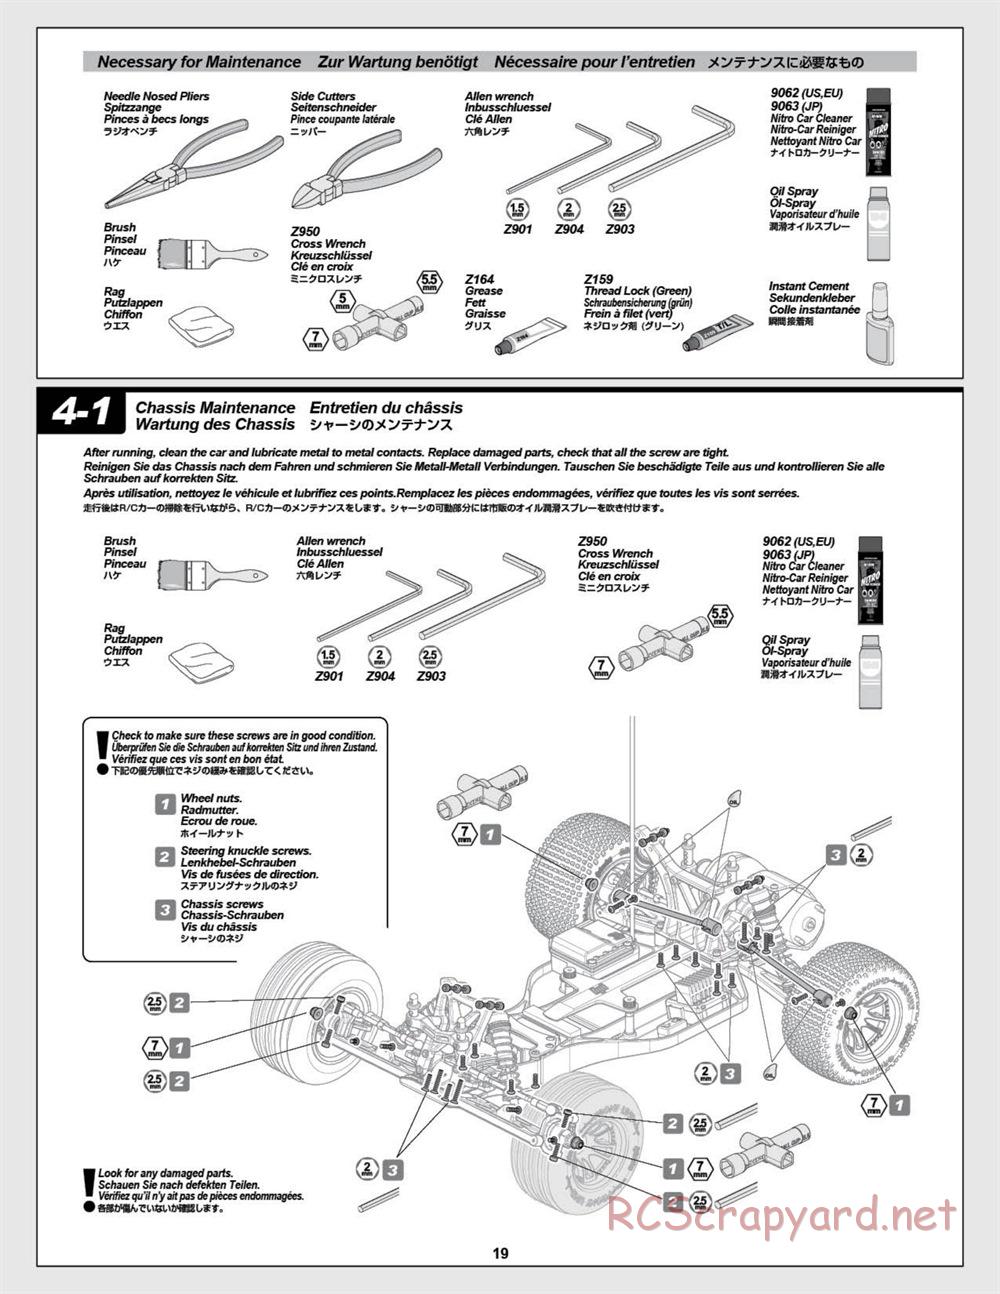 HPI - E-Firestorm-10T - Manual - Page 19